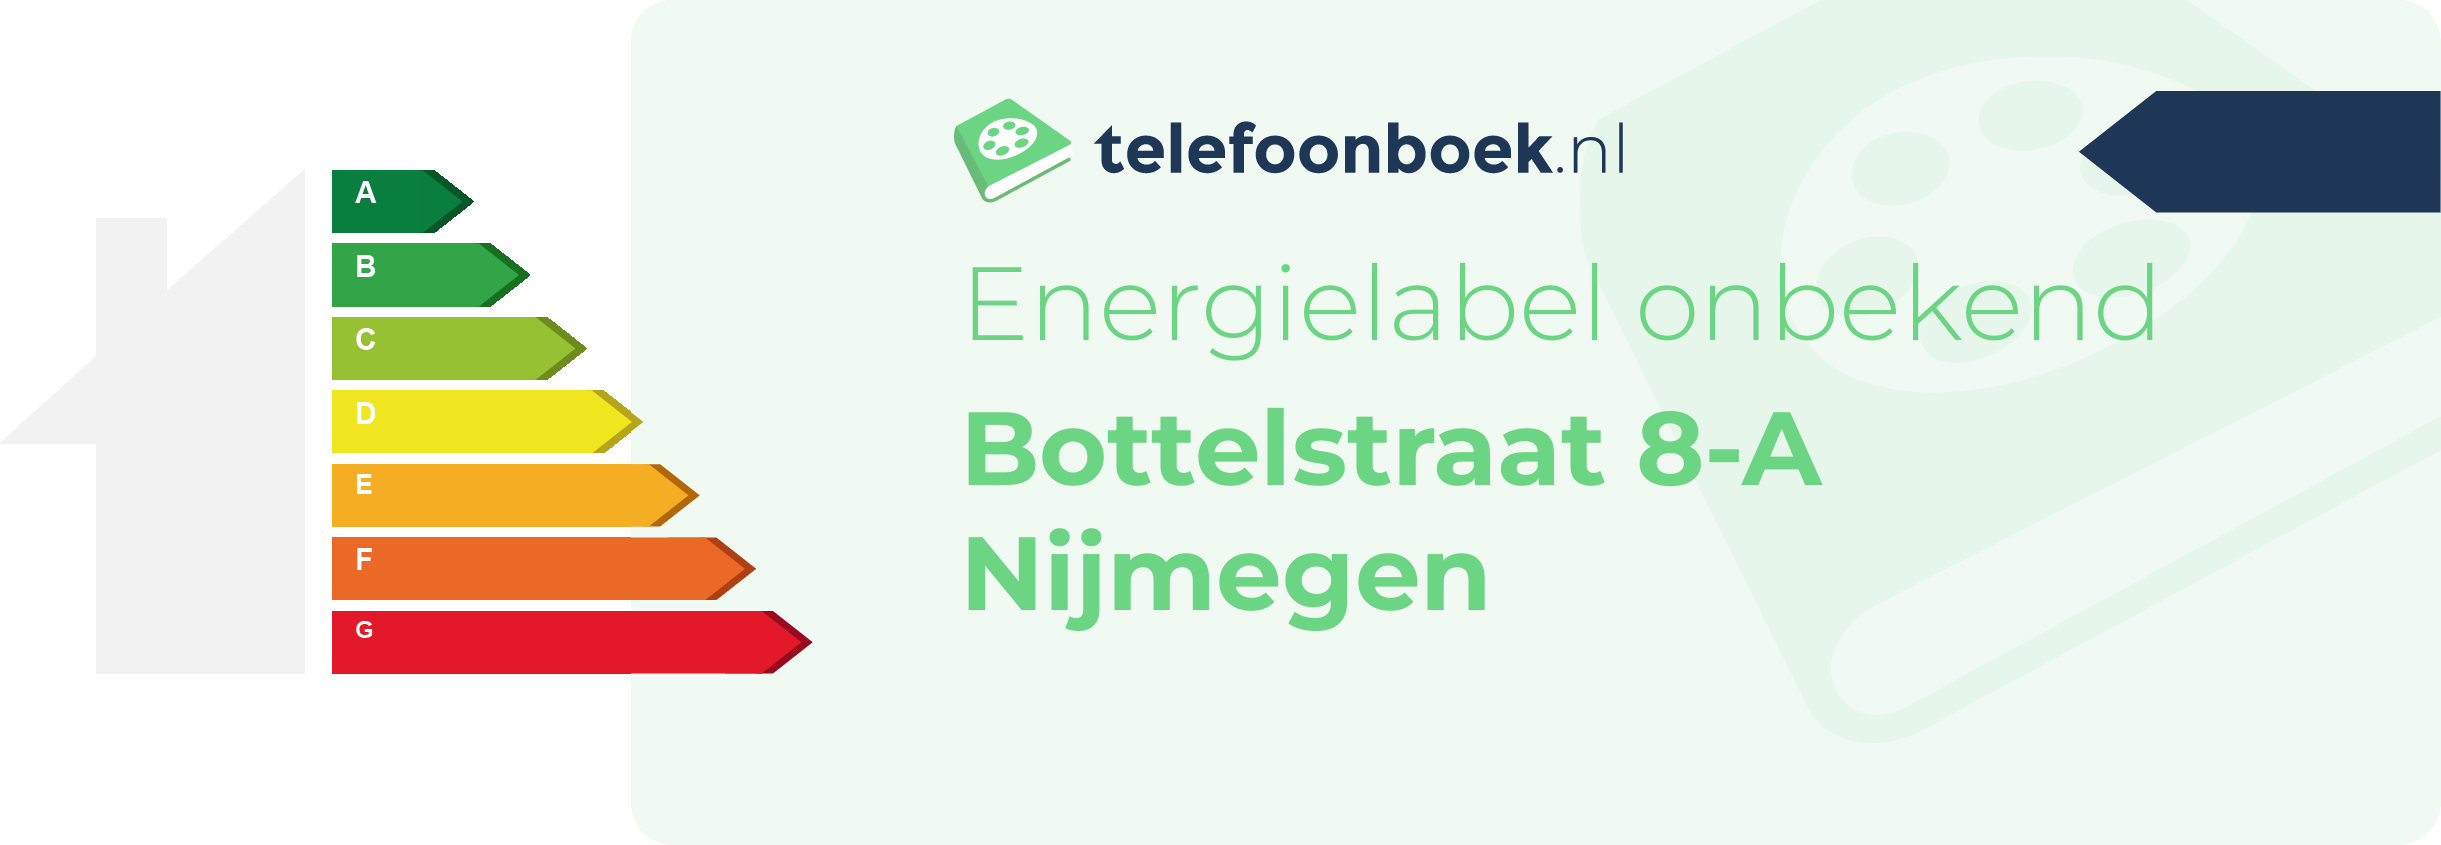 Energielabel Bottelstraat 8-A Nijmegen